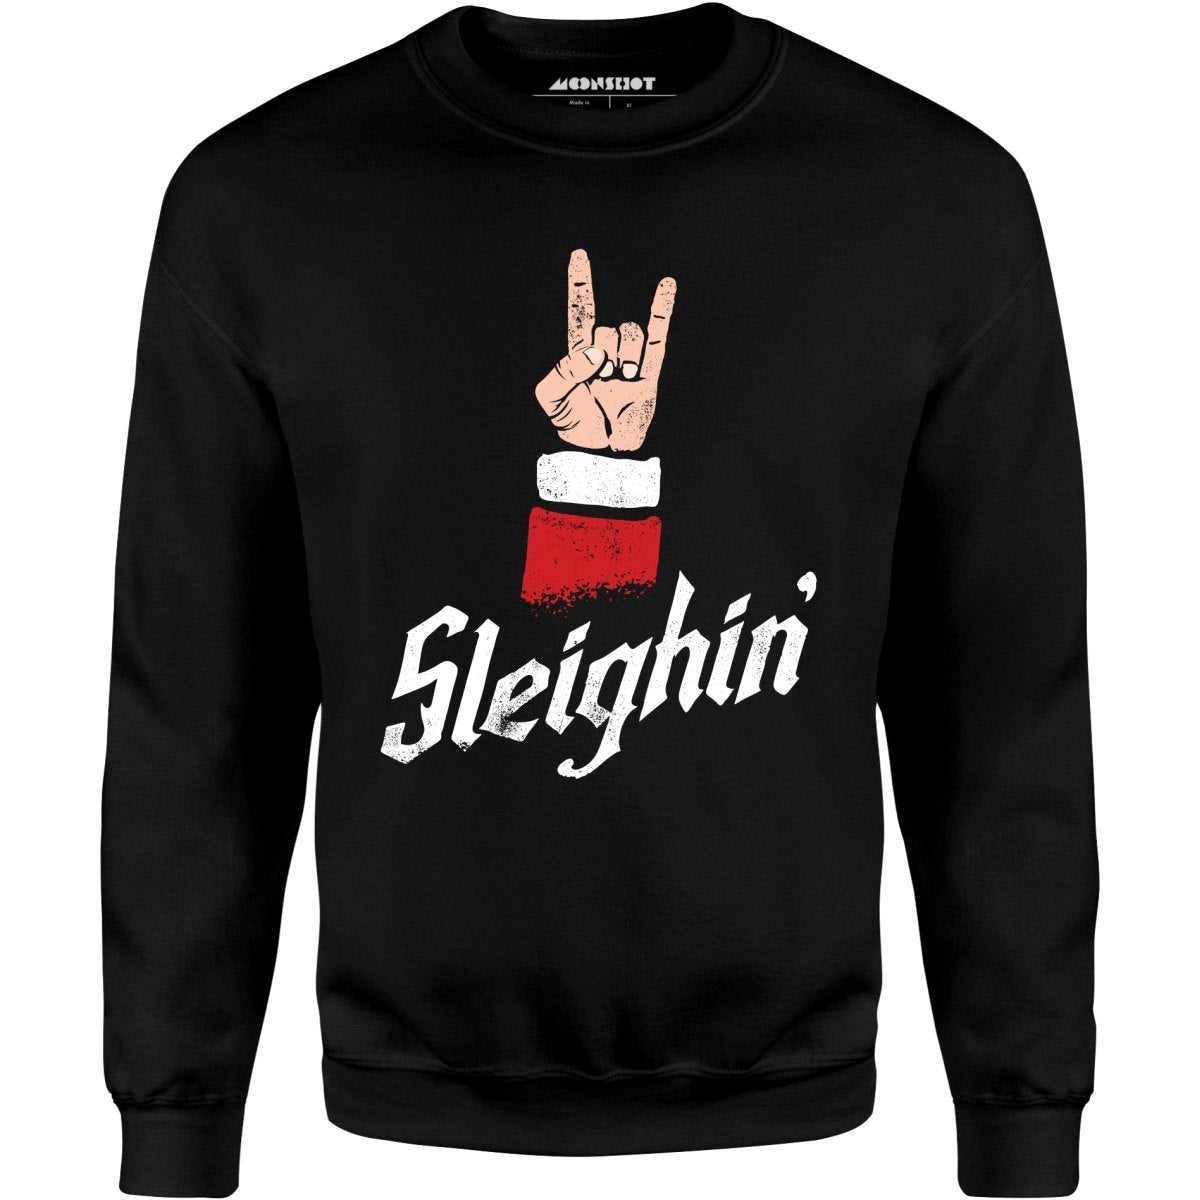 Sleighin' - Unisex Sweatshirt